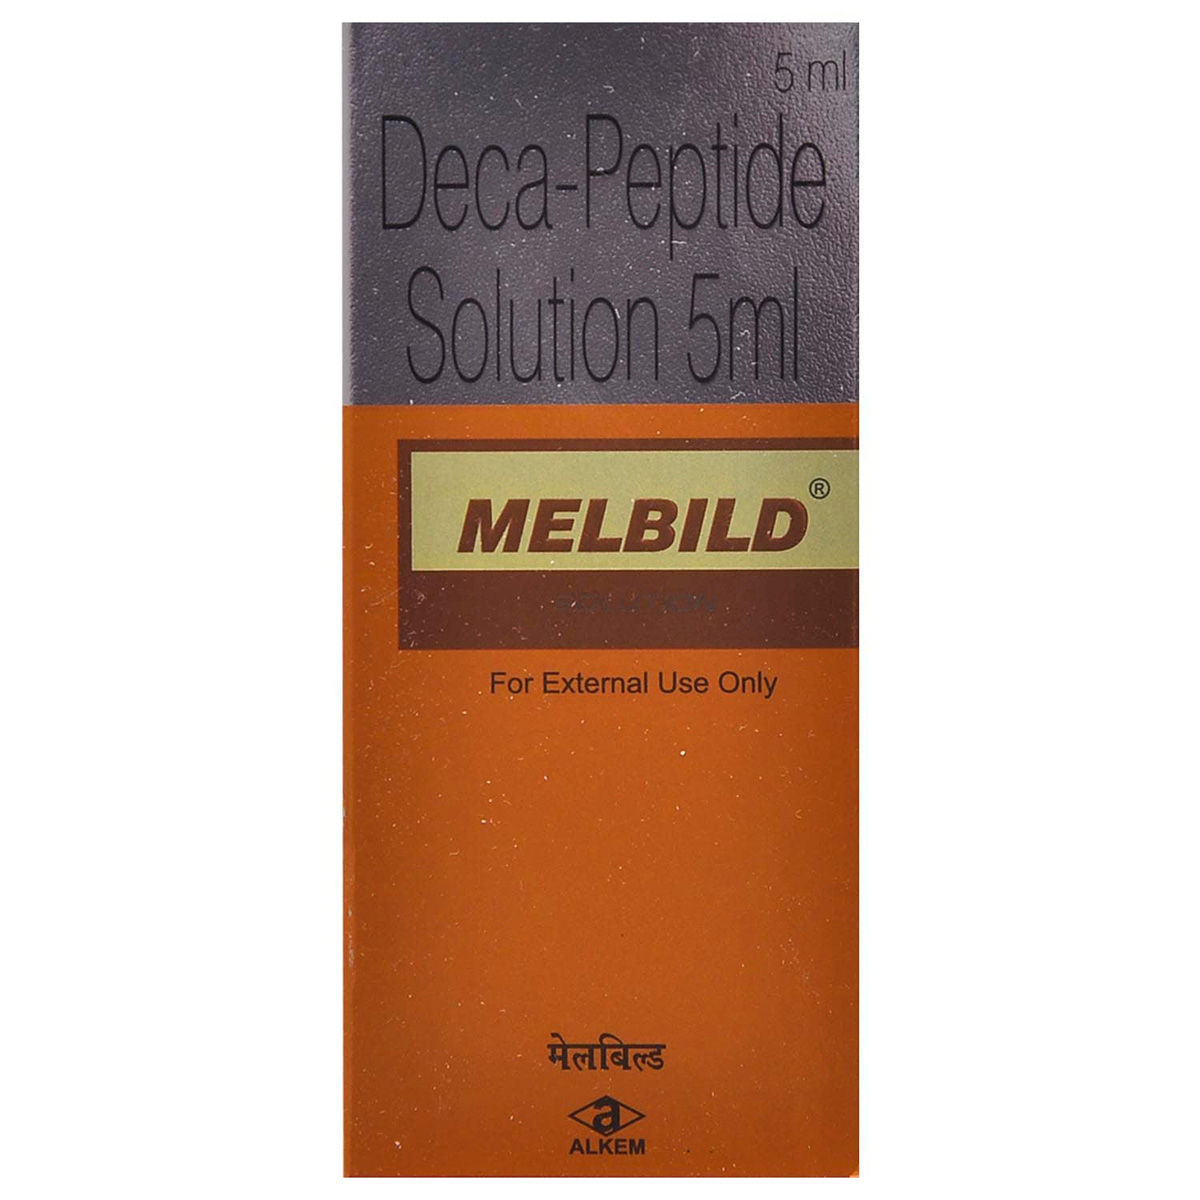 Buy Melbild Solution 5 ml Online